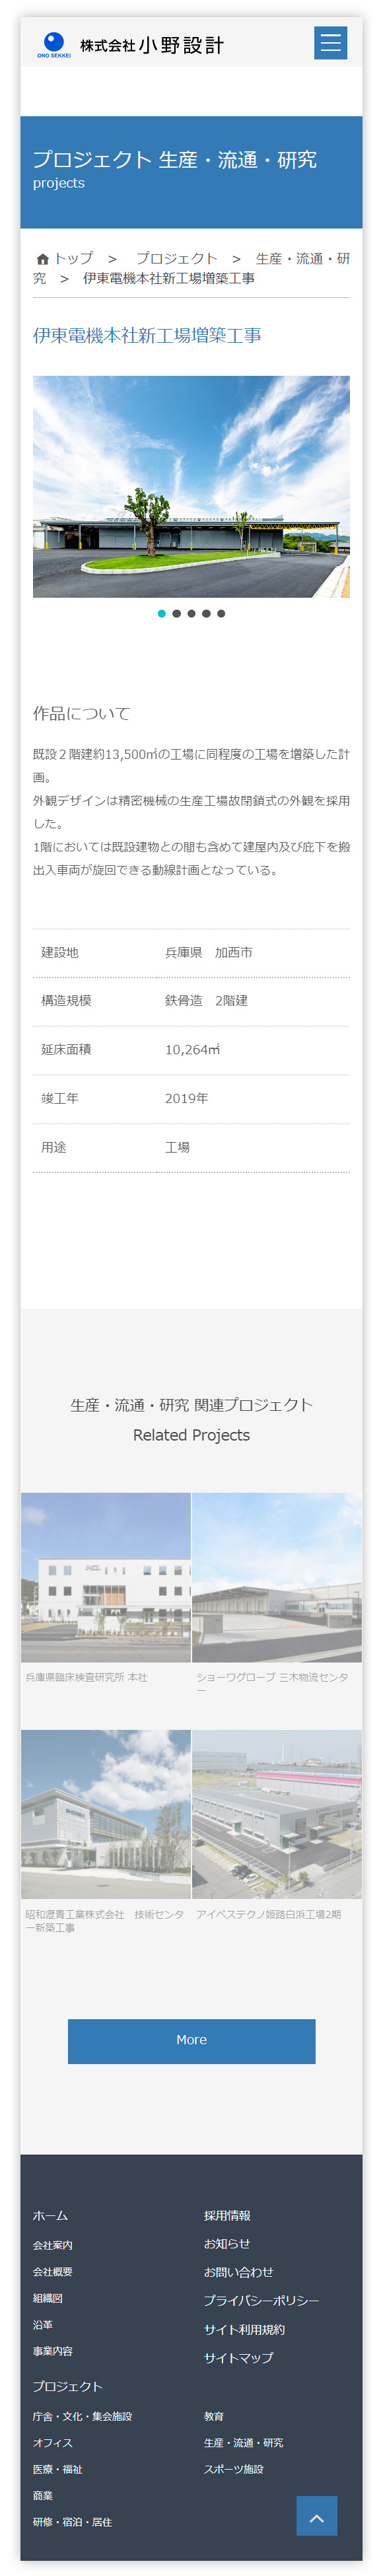 株式会社小野設計様スマートフォンホームページ